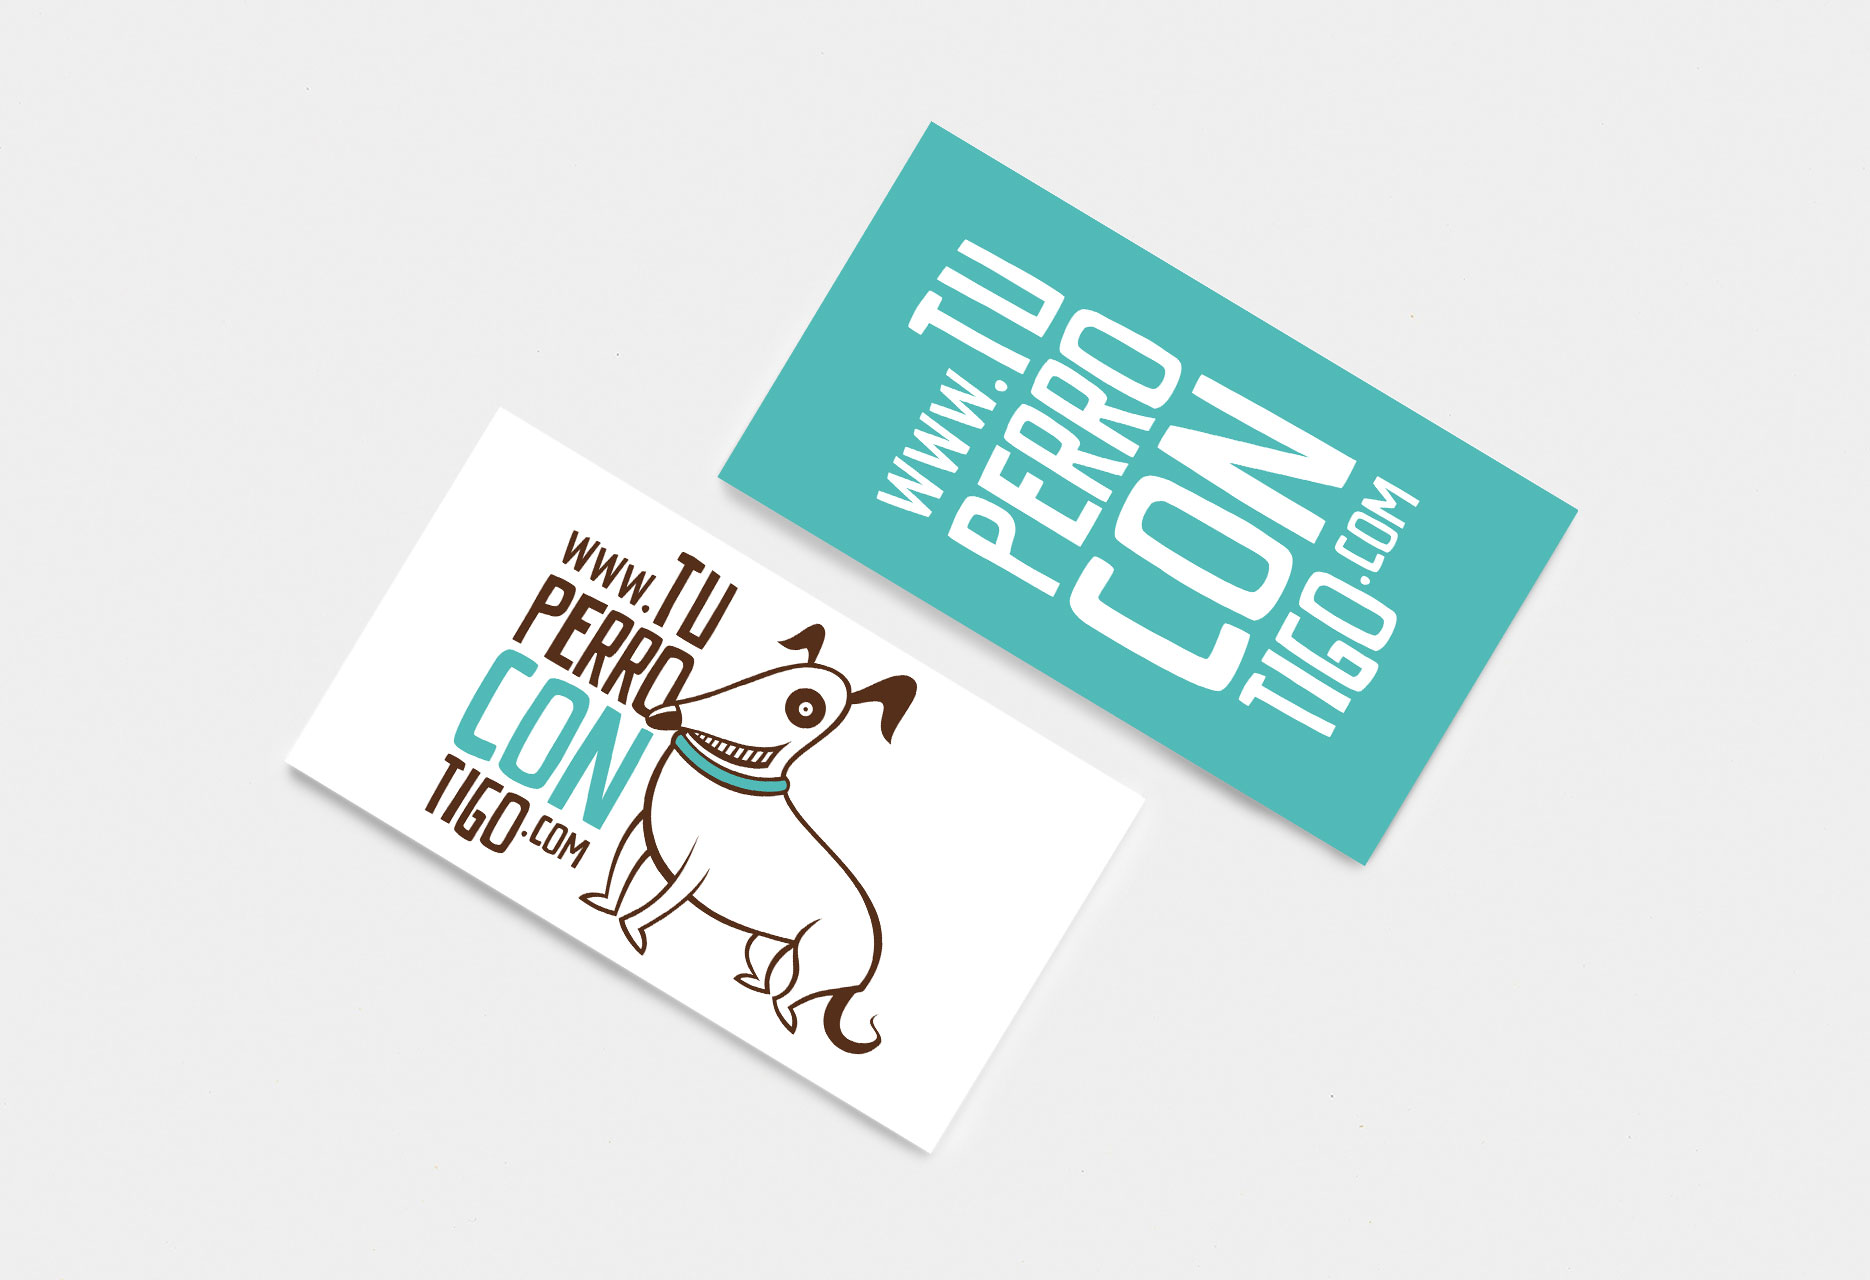 Marca gráfica y diseño web Tu perro contigo - cartelería / diseño web / identidad corporativa / ilustración - 2010